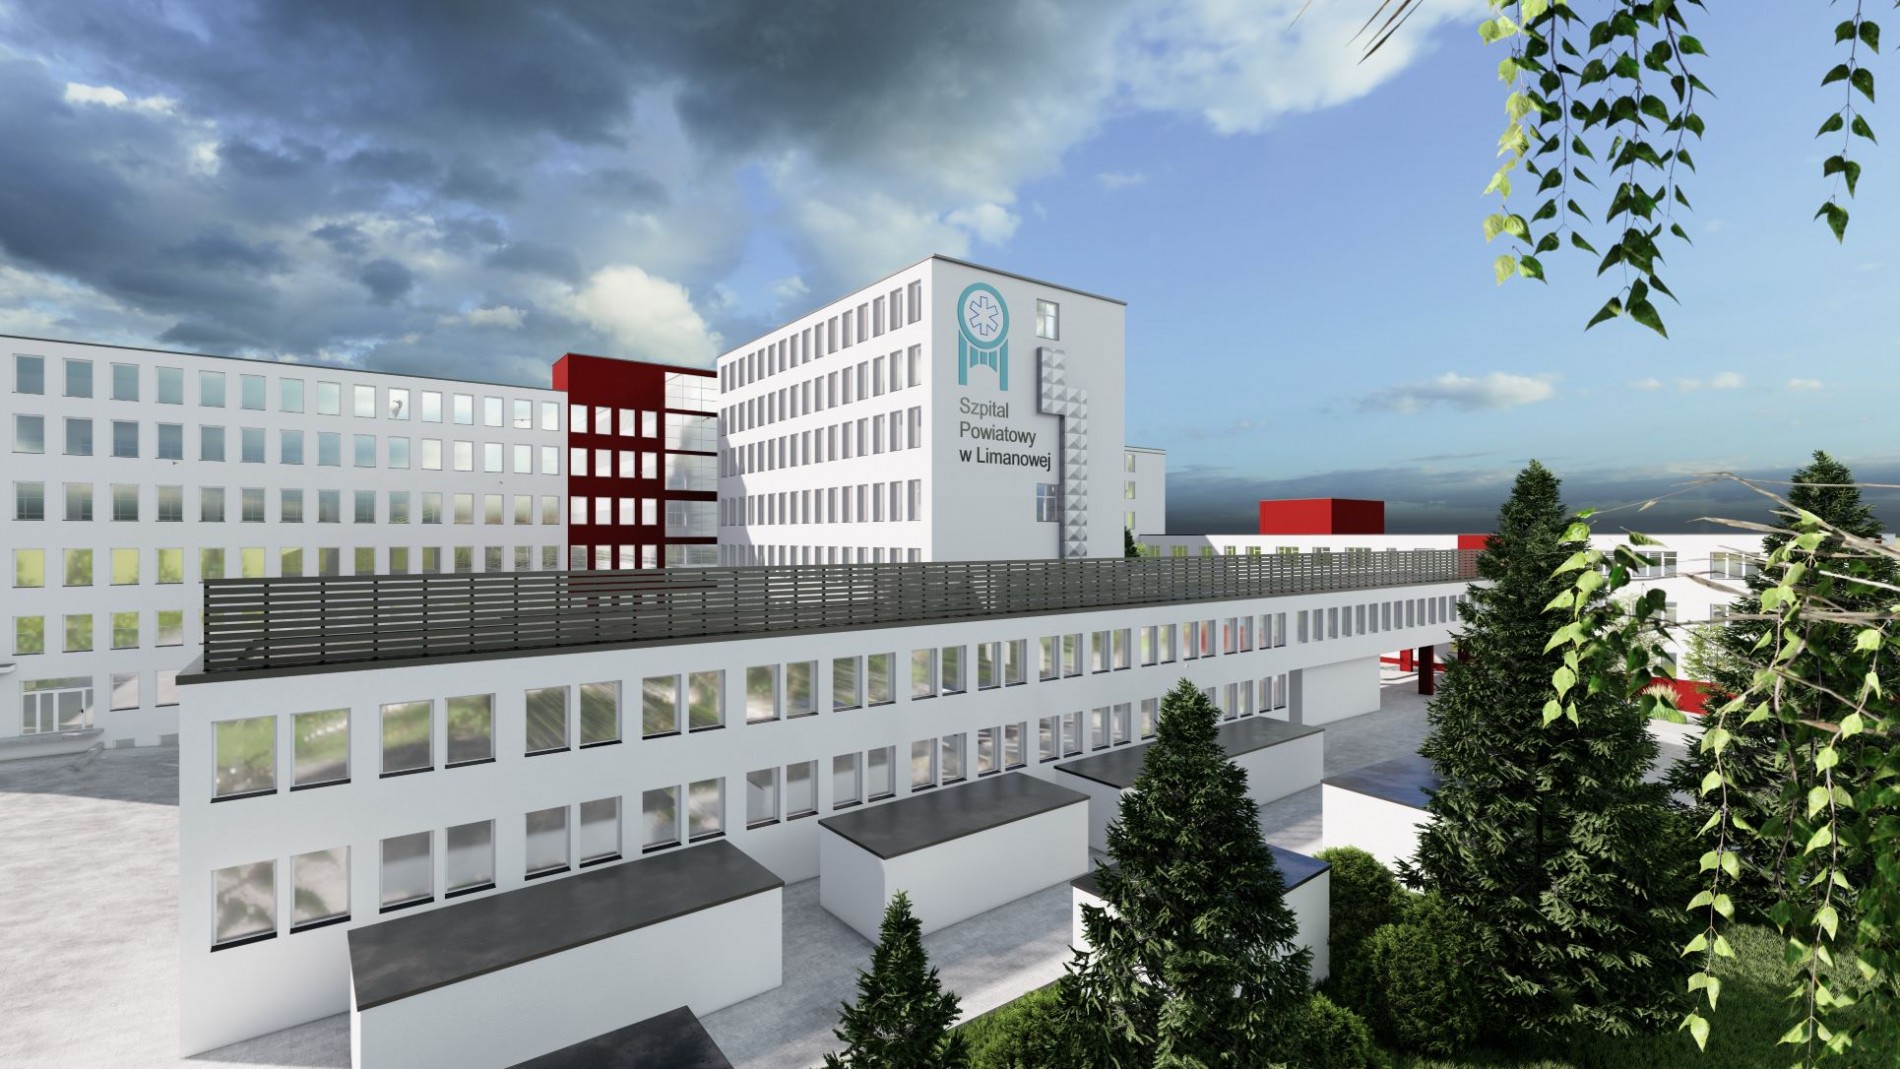 Zdjecie przedstawiajace komputerową wizualizacje architektoniczną planowanej termomodernizacji szpitala powiatowego w Limanowej